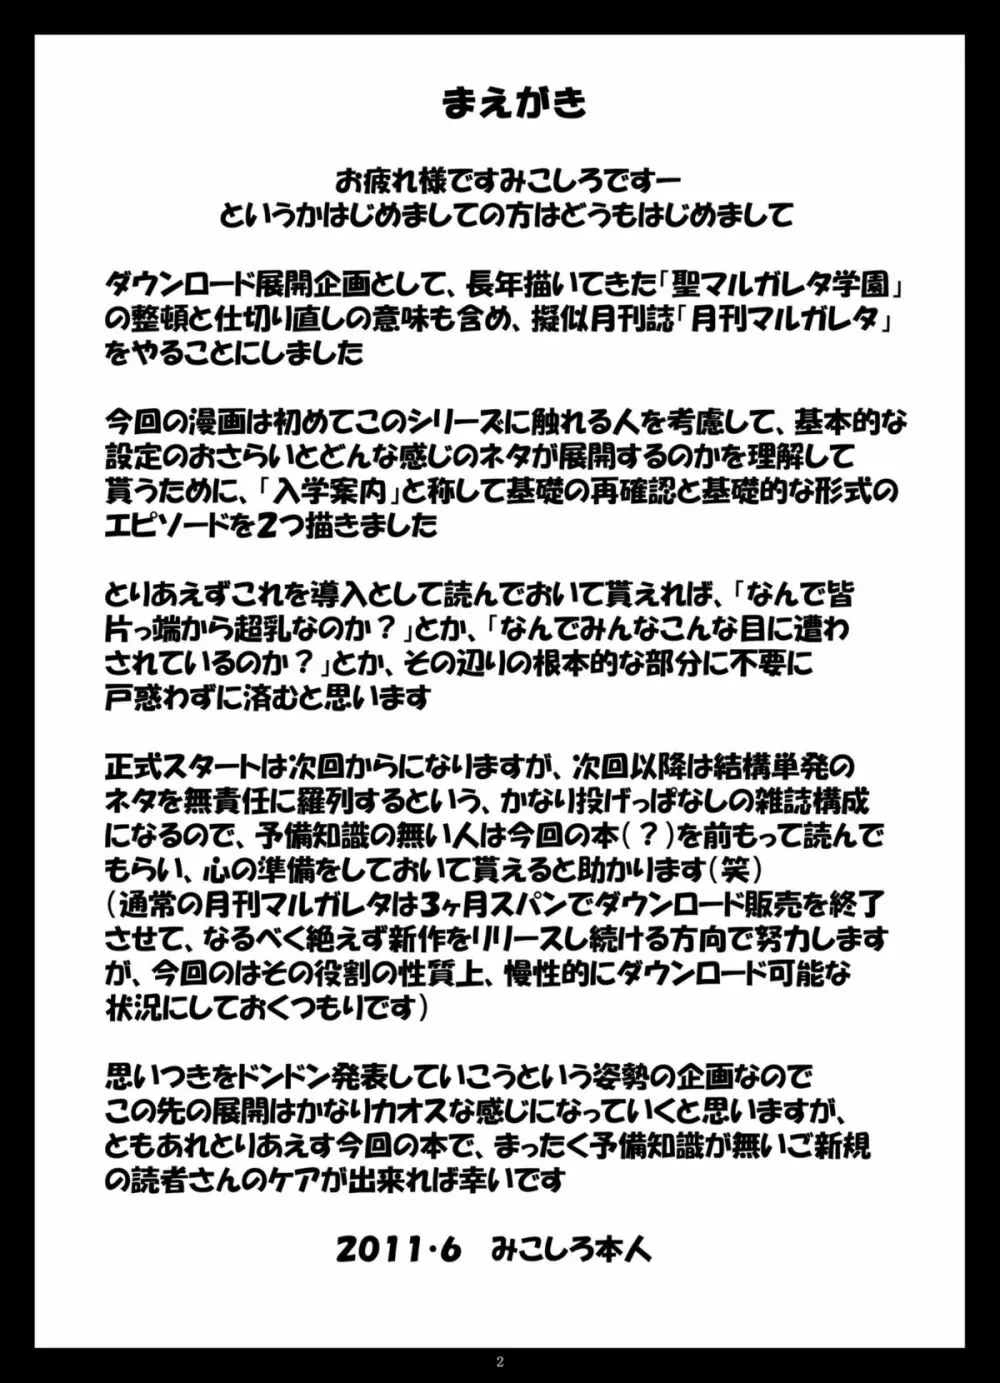 月刊マルガレタ創刊準備号「入園案内」vol.000 2ページ